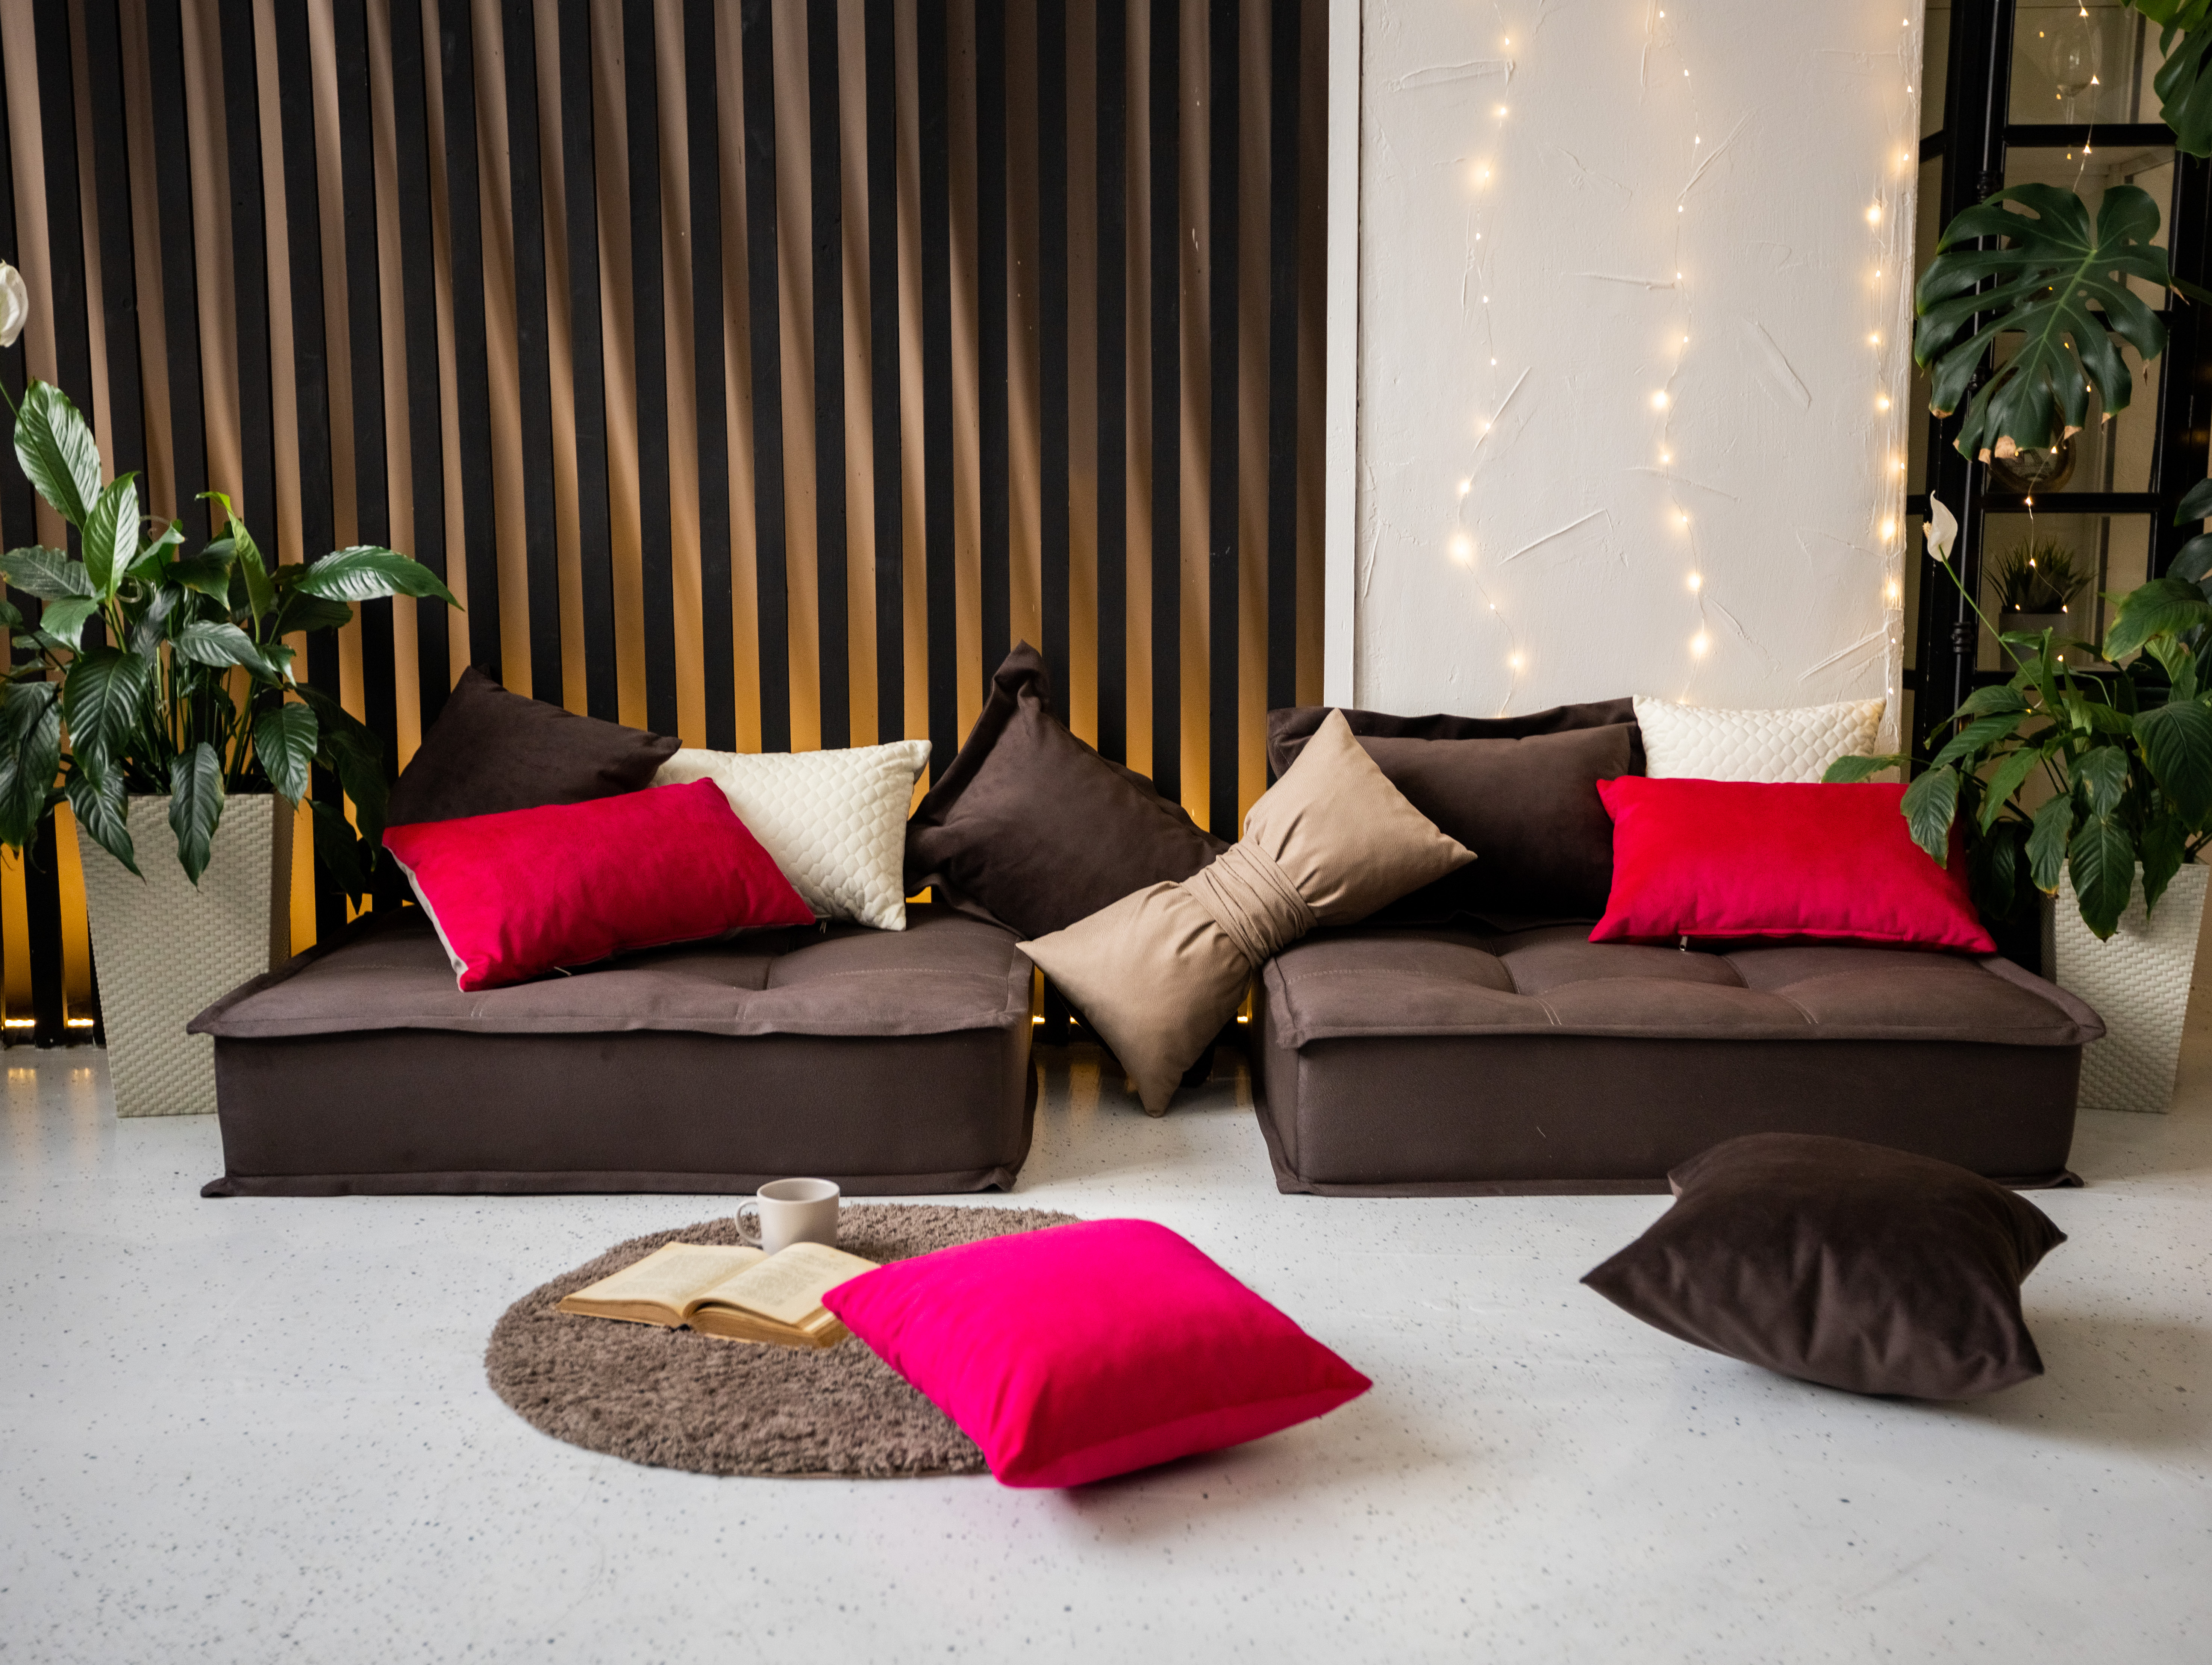 Купить Диван-кровать, кресло-кровать MIELLA 2 Small, коричневый скоричневыми подушками — Московская область — Интернет-магазин Miella